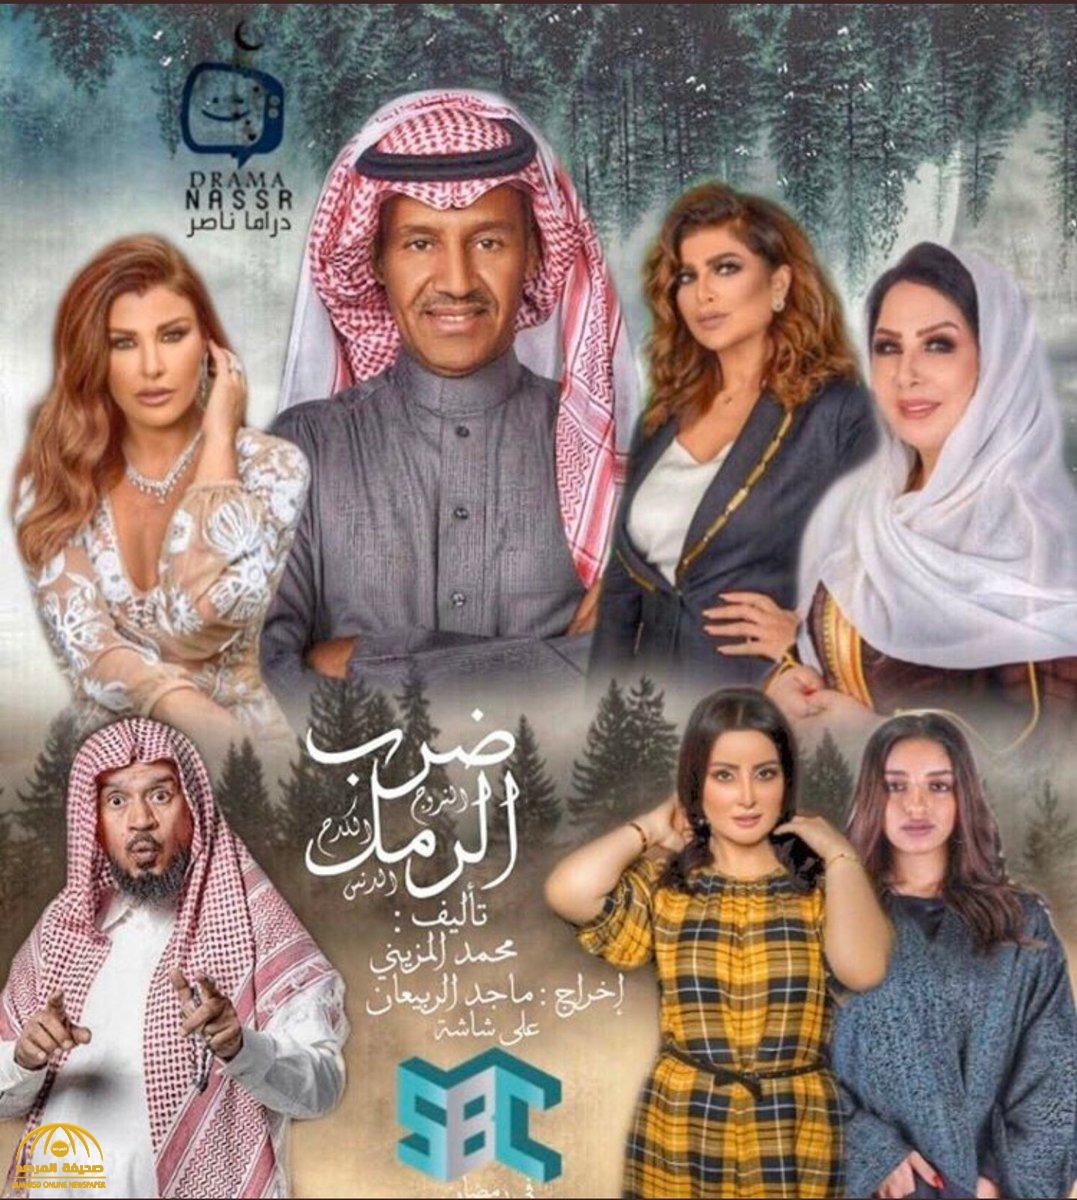 شاهد : أول ظهور للمطرب الشعبي "خالد عبدالرحمن" يمثل دور "شقير" في مسلسل "ضرب الرمل"